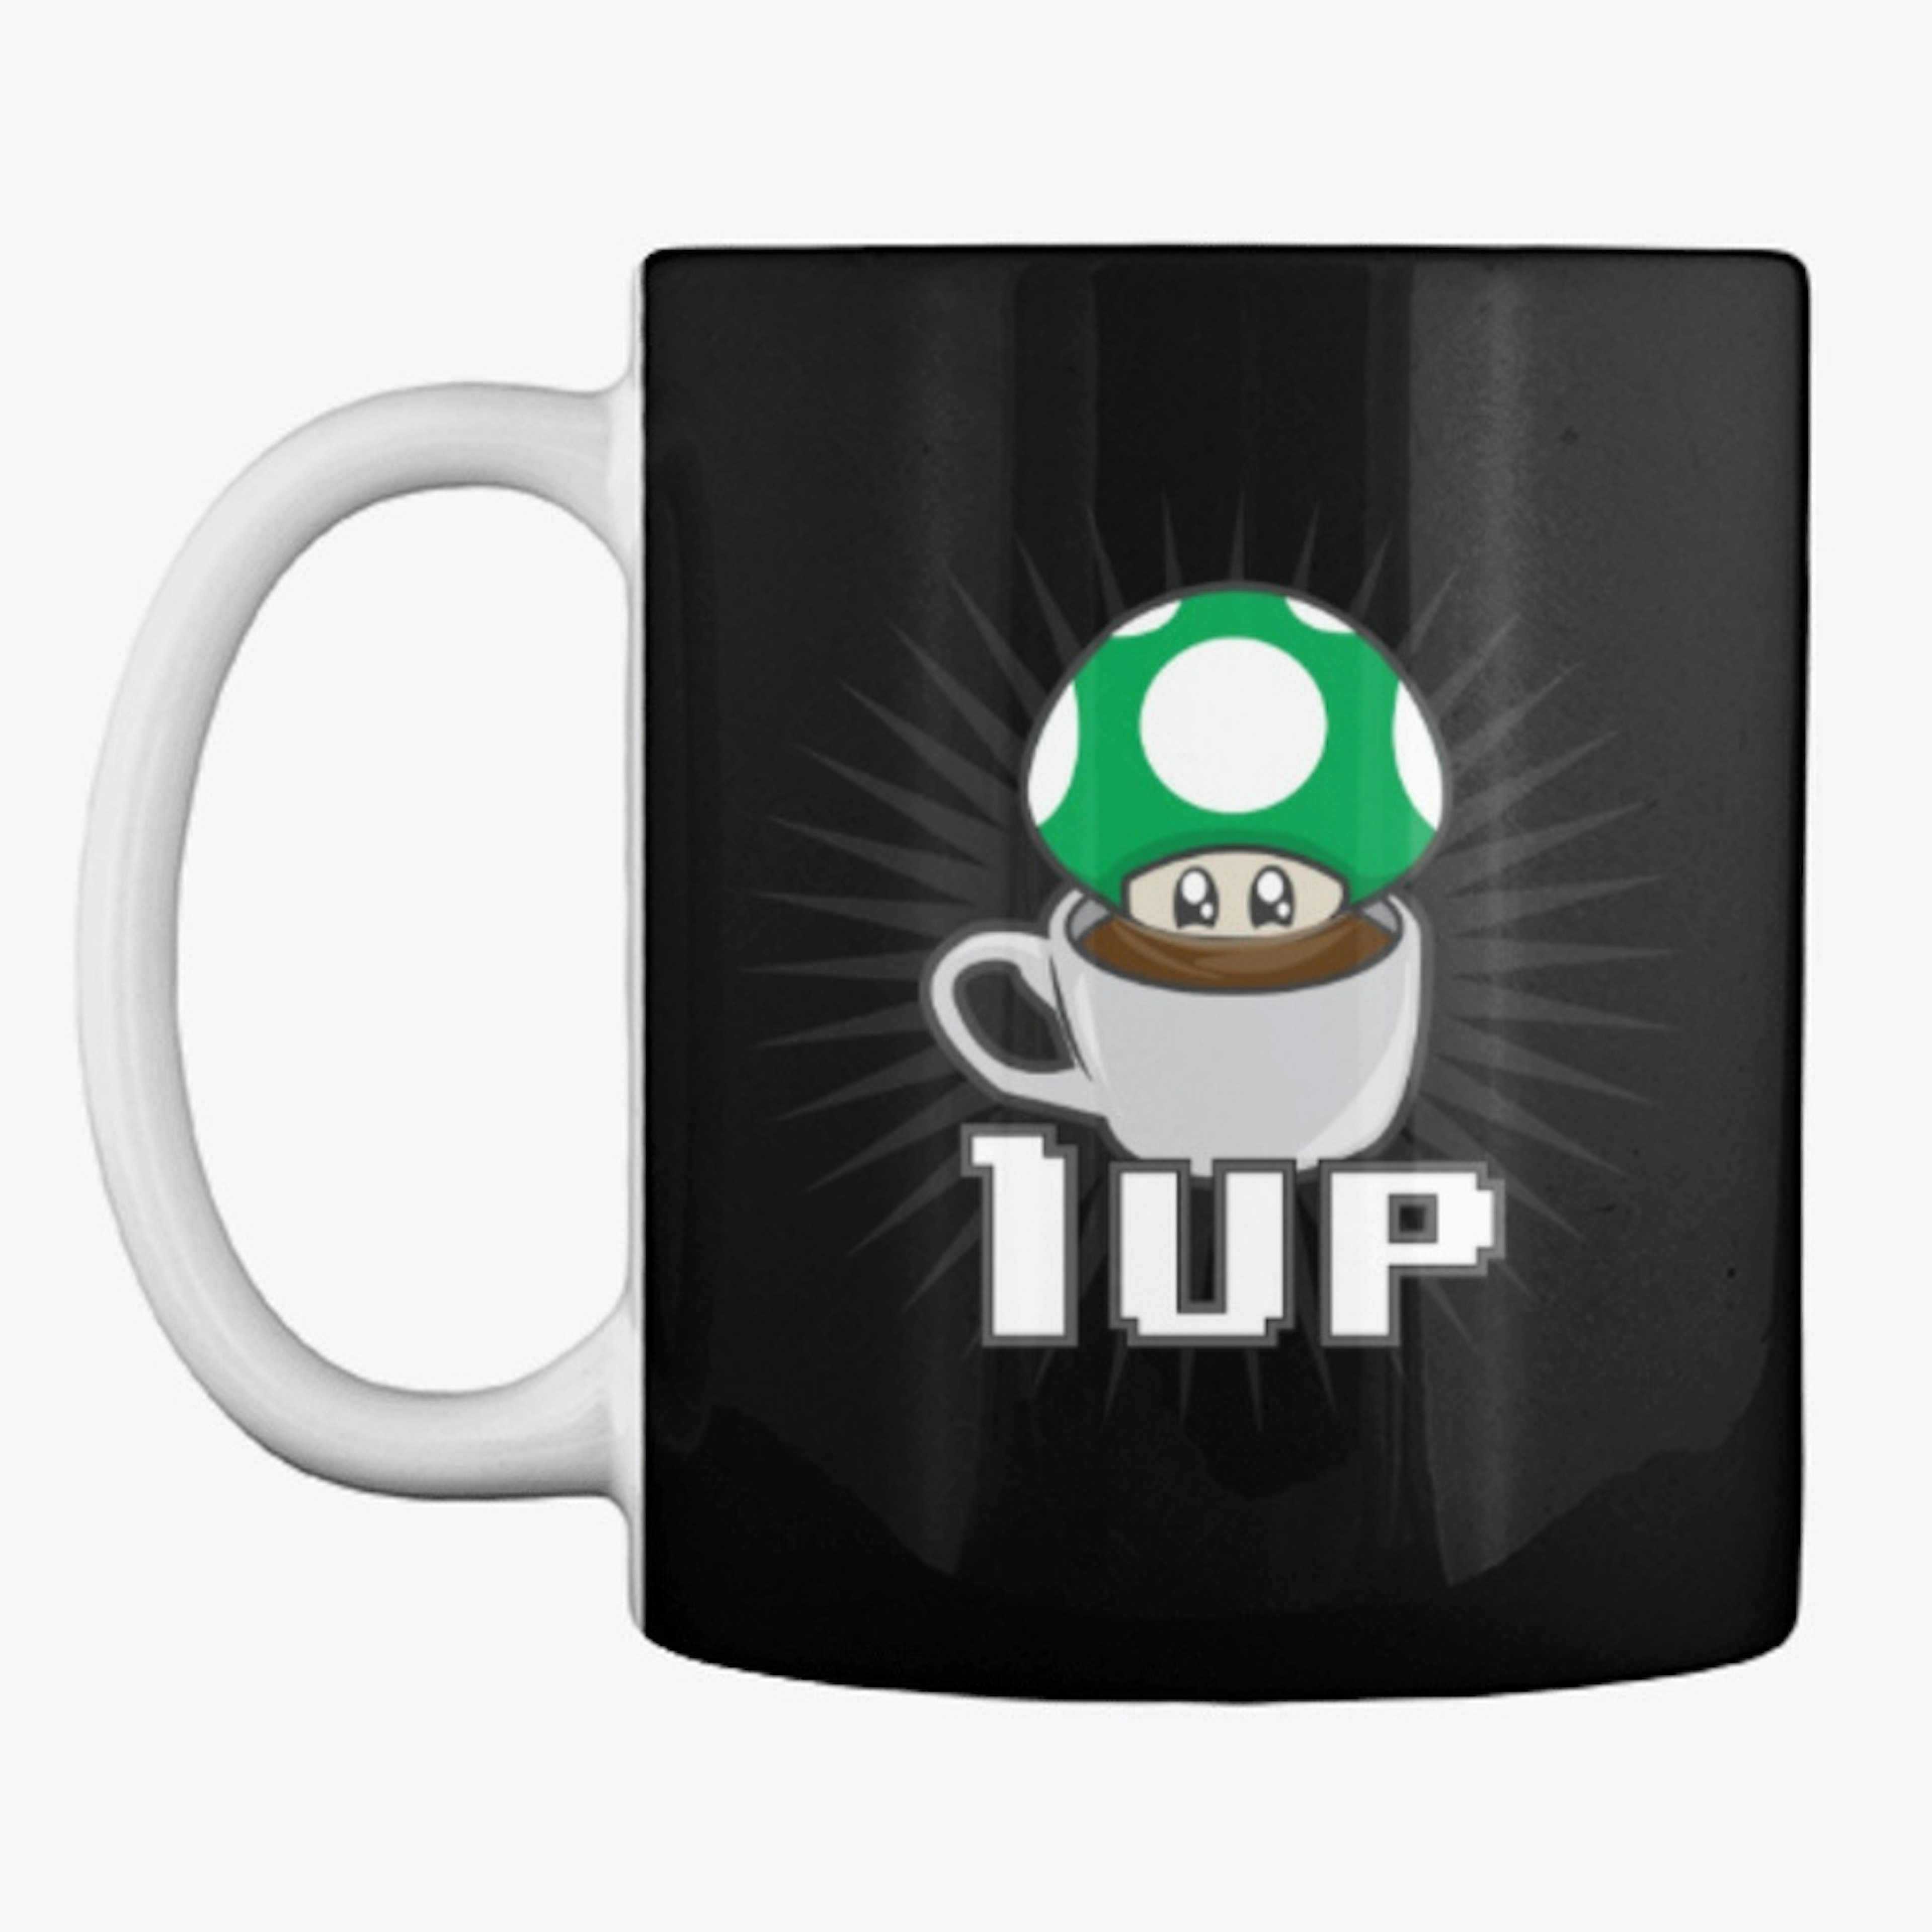 1-Up Coffee